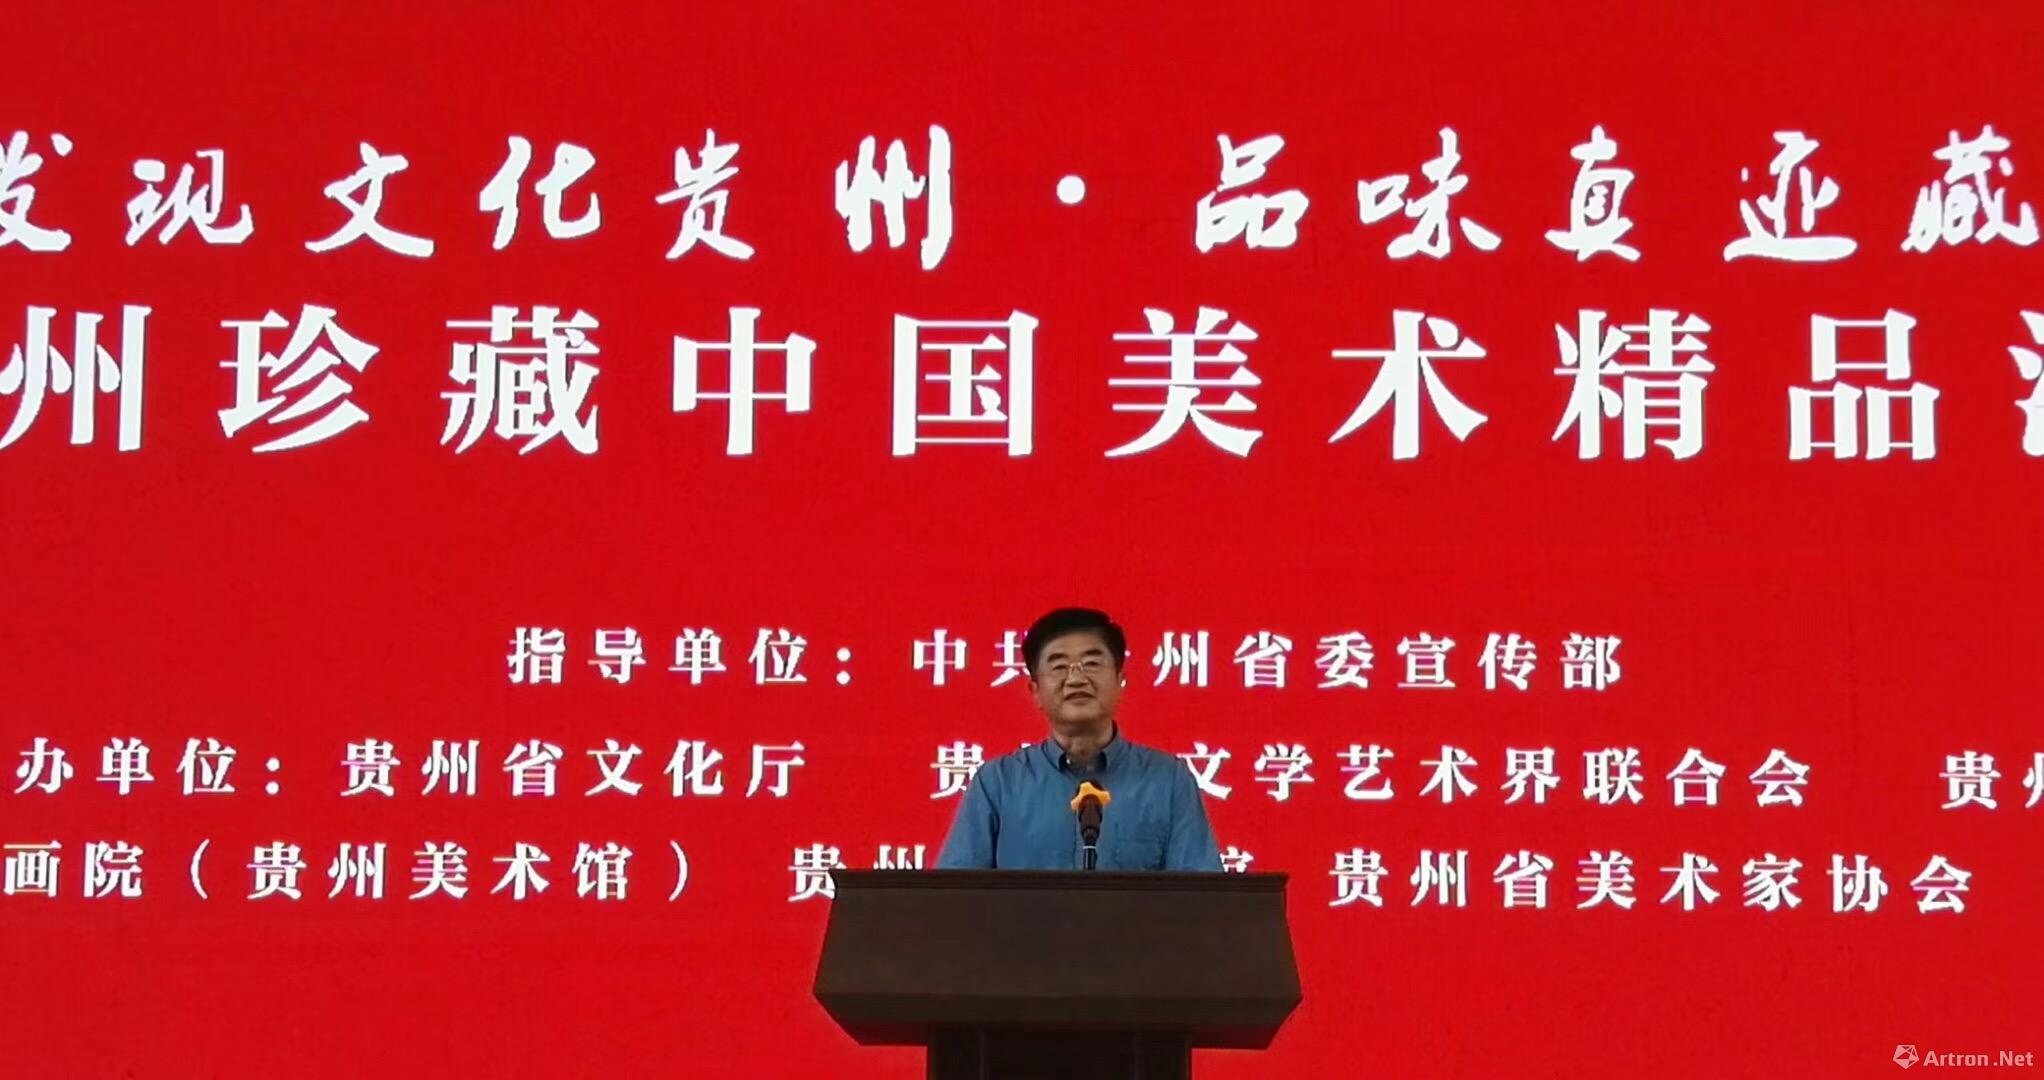 贵州省委常委、宣传部部长慕德贵在展览开幕式上致辞